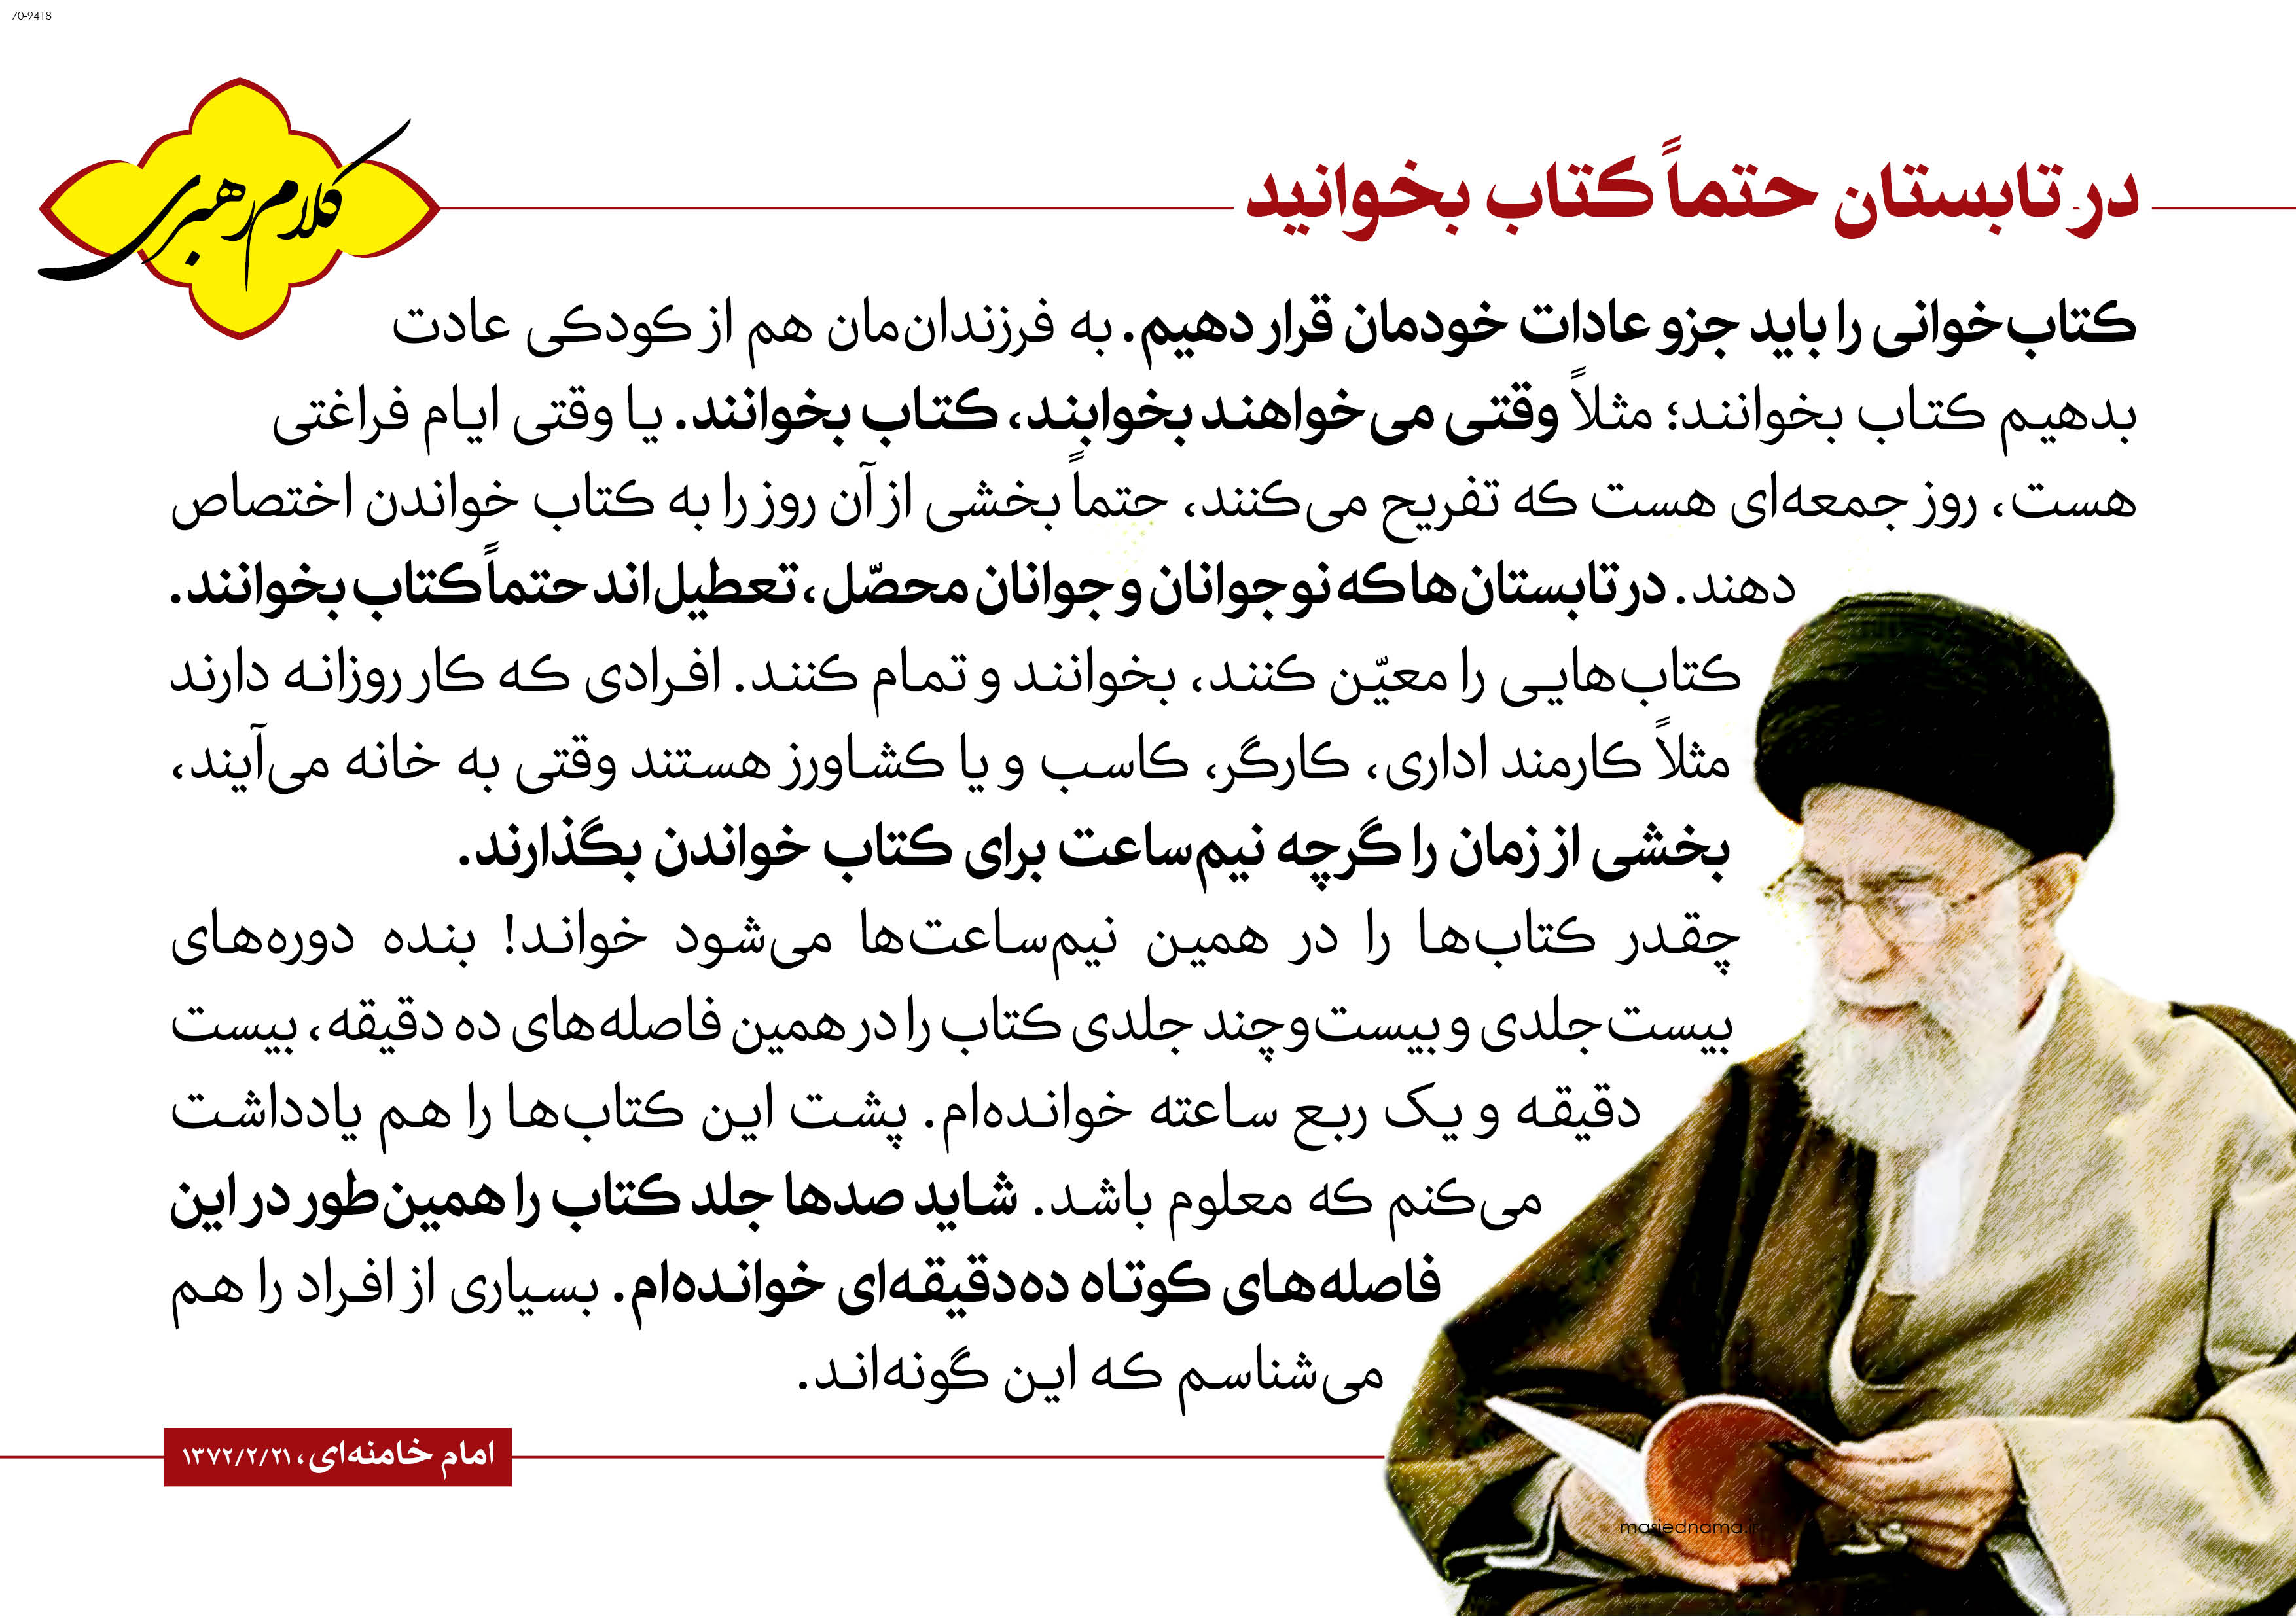 http://bayanbox.ir/view/6429660689169073373/05-Imam-Khamenei-70-9418.jpg